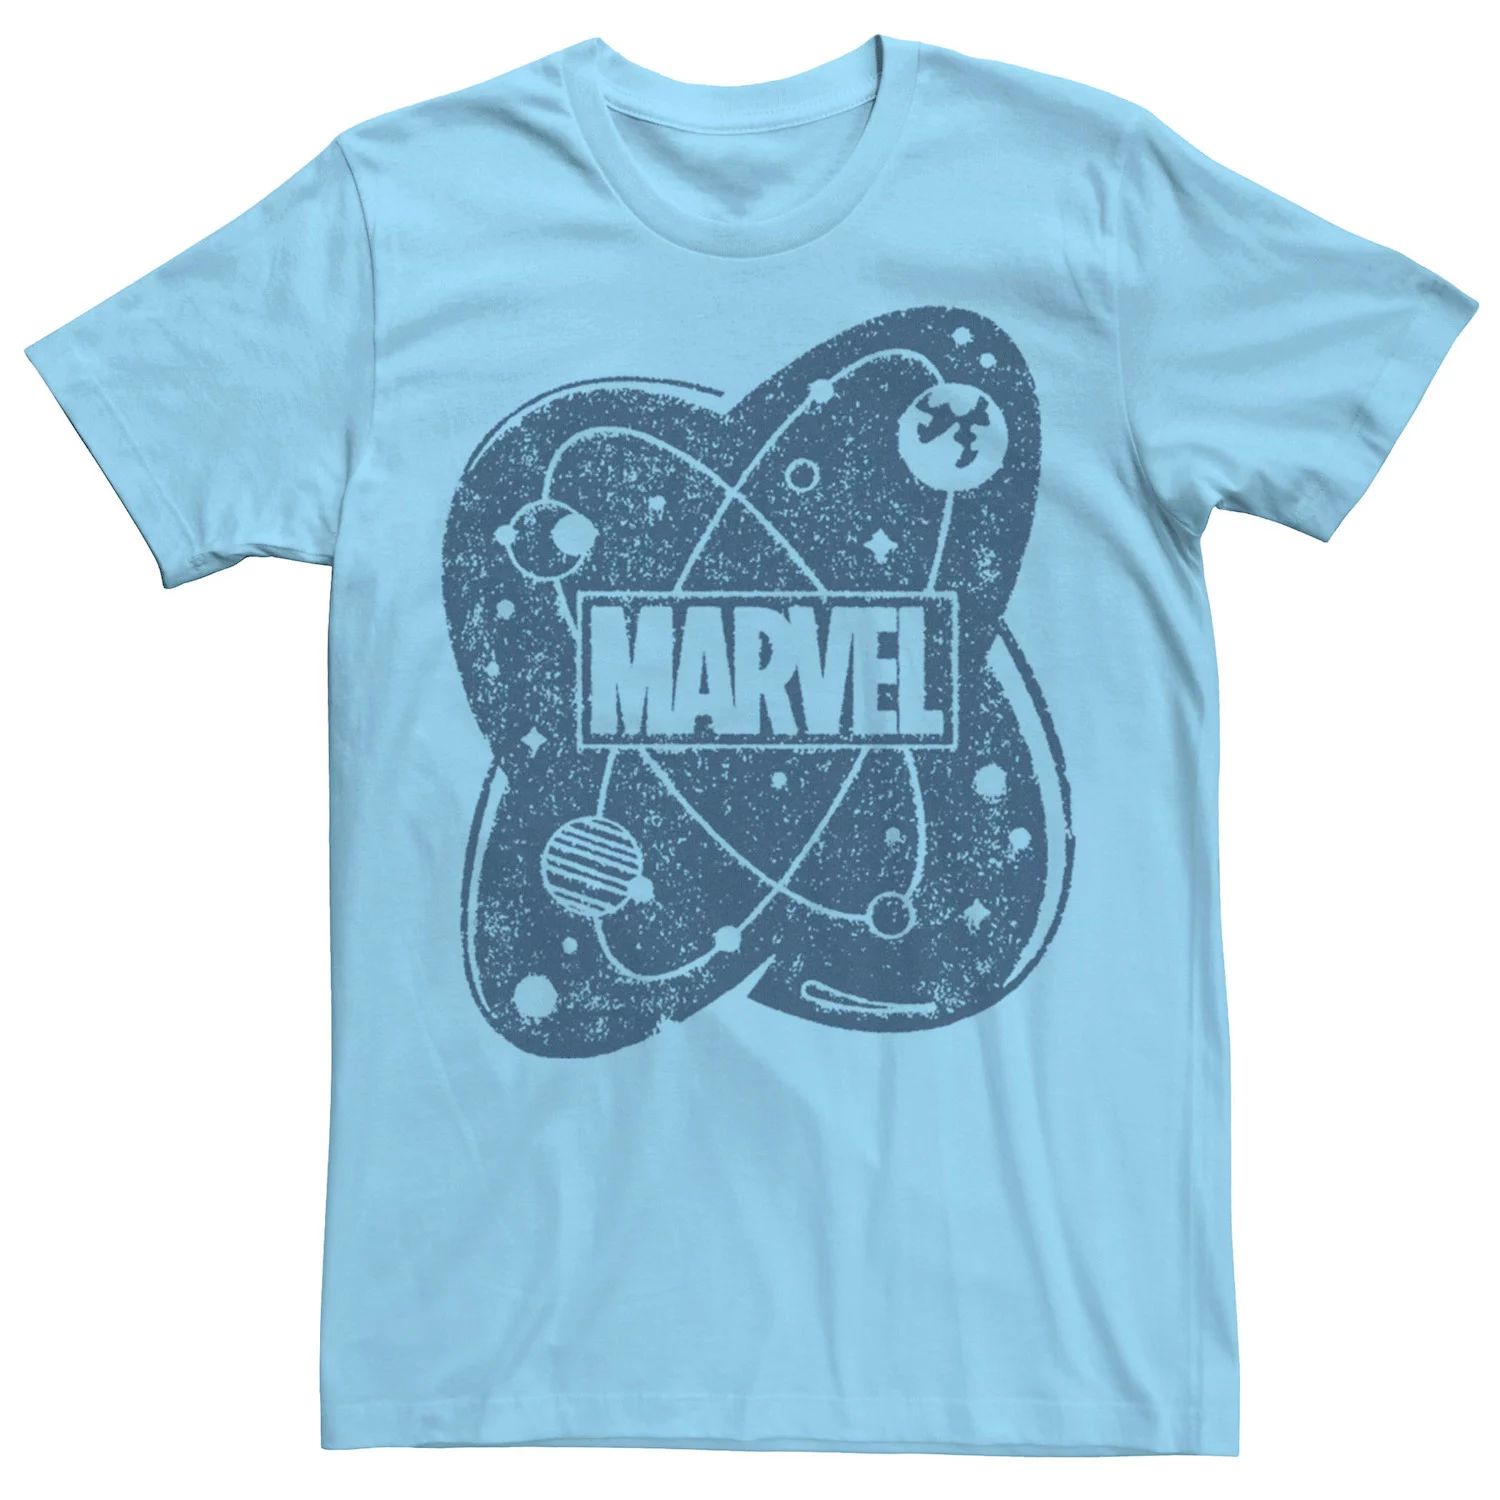 Мужская футболка с логотипом Atom Marvel